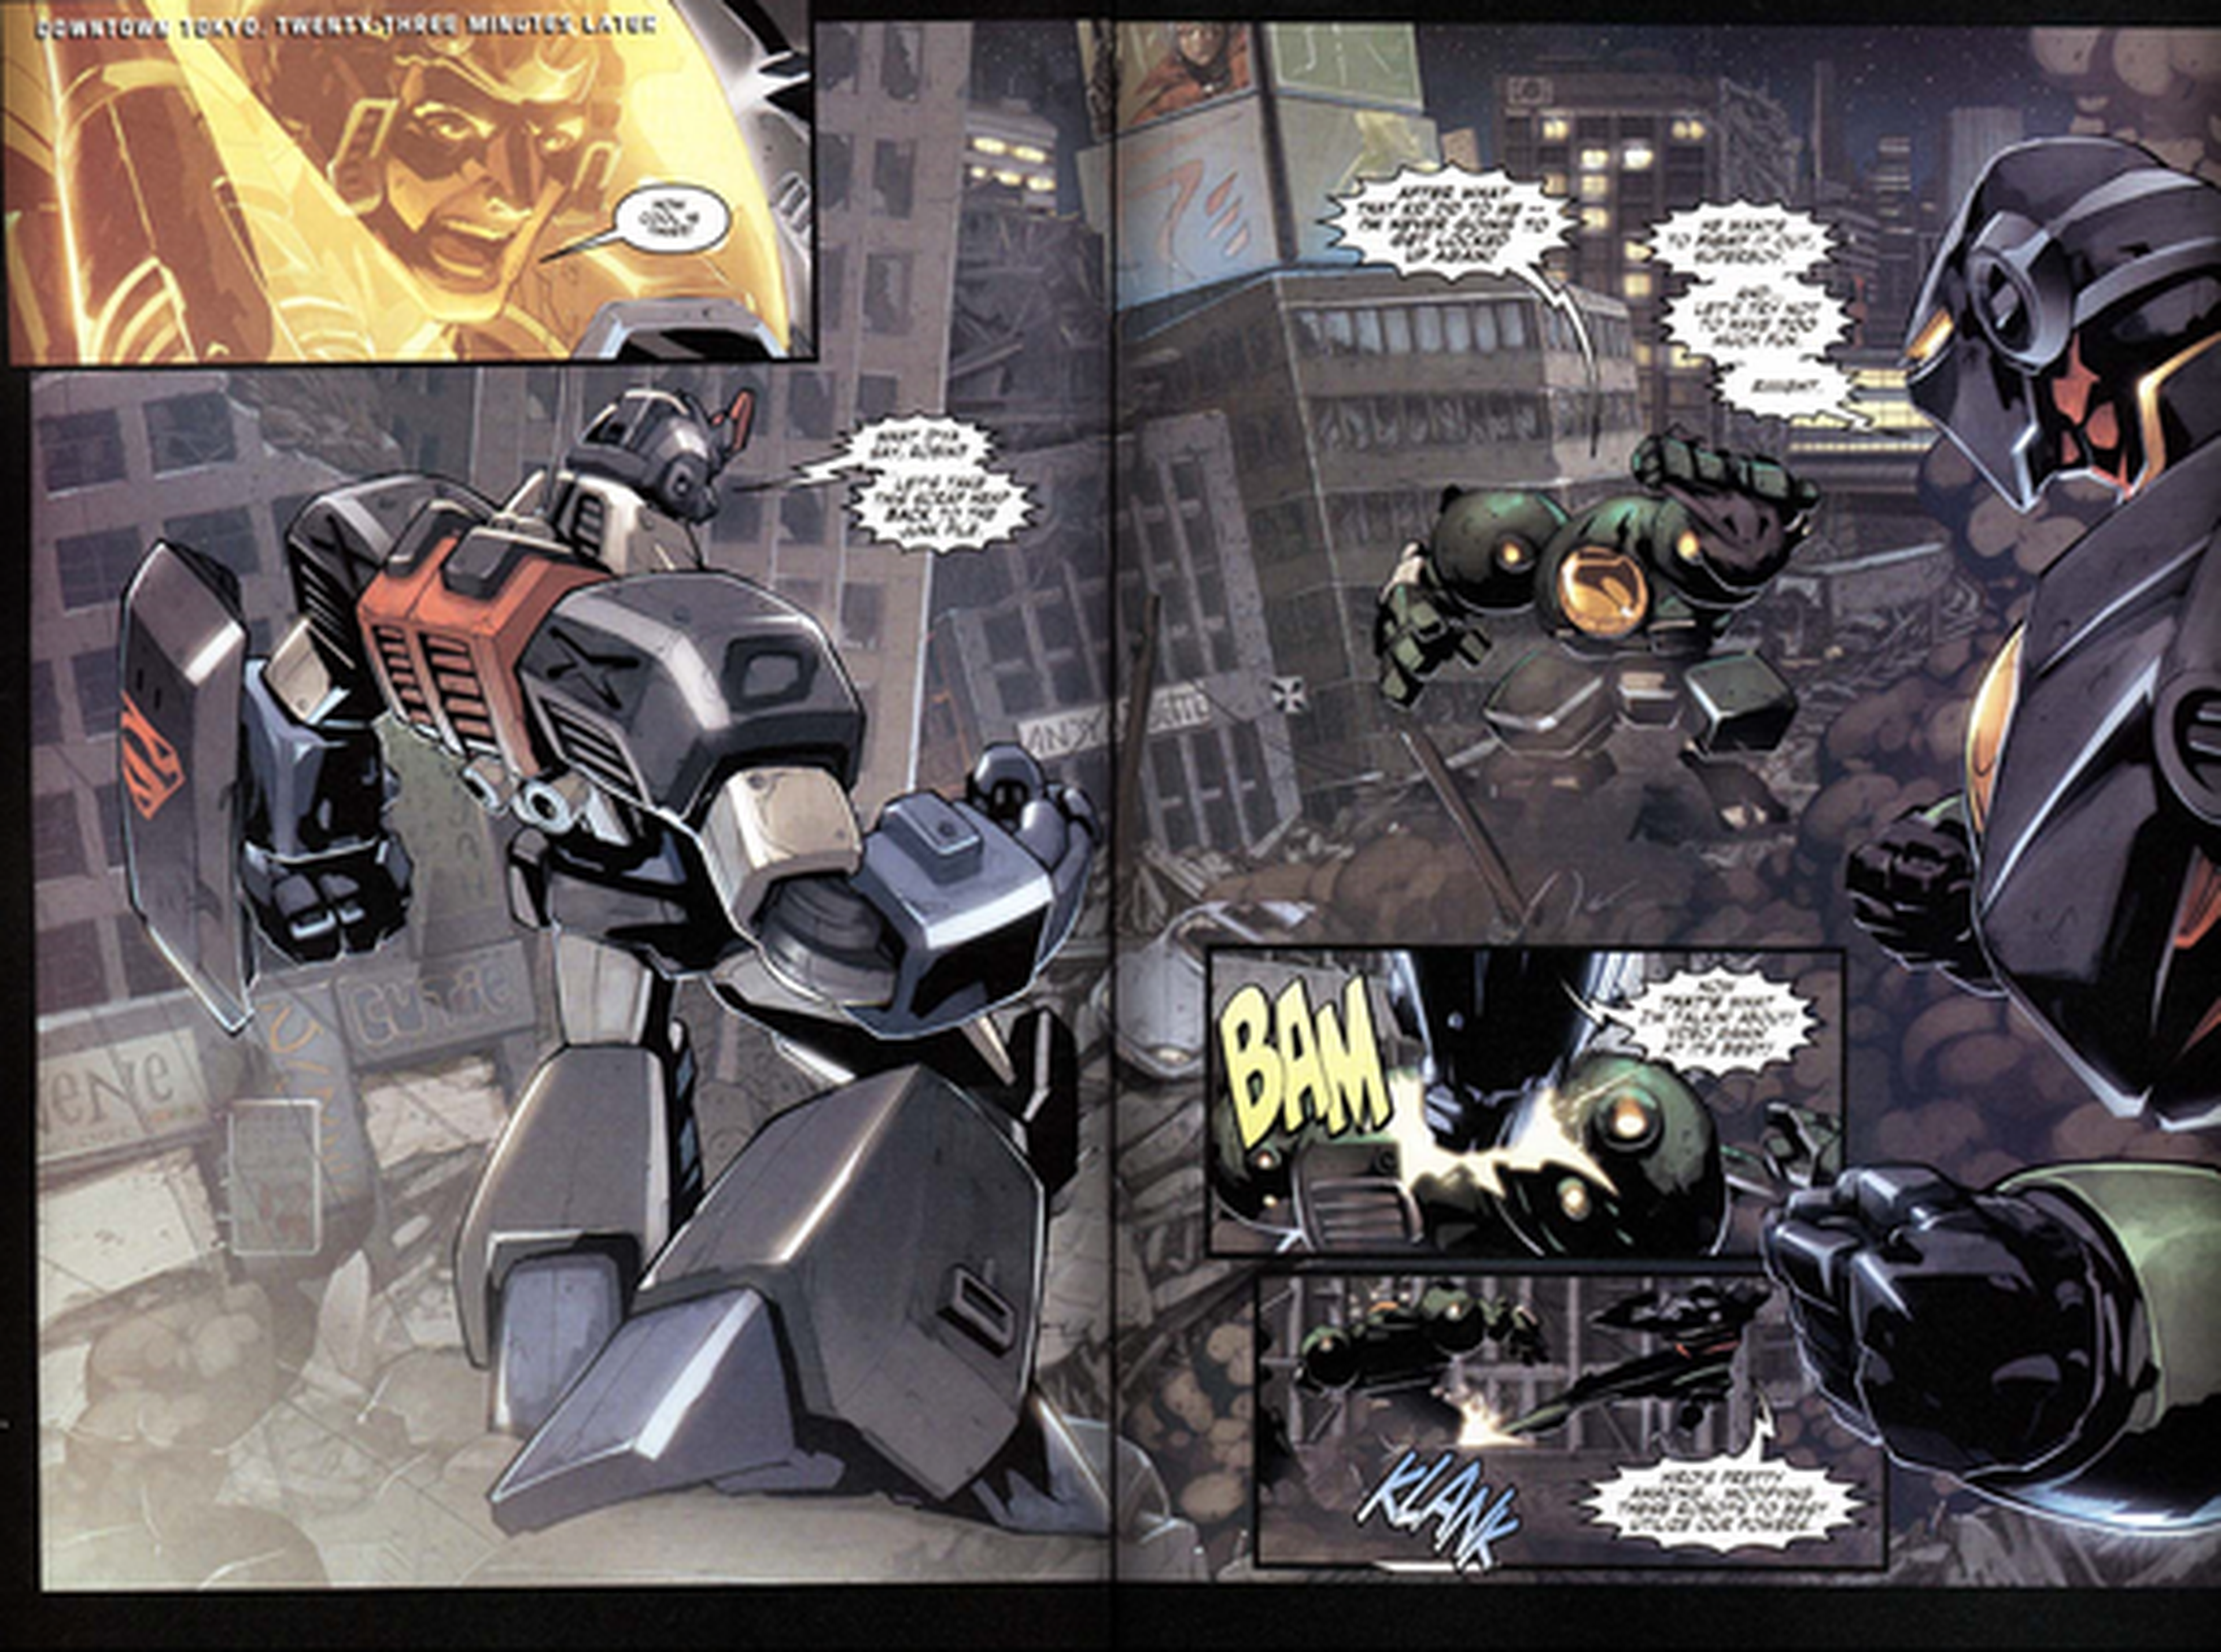 Superman / Batman: Enemigos públicos - Crítica del cómic